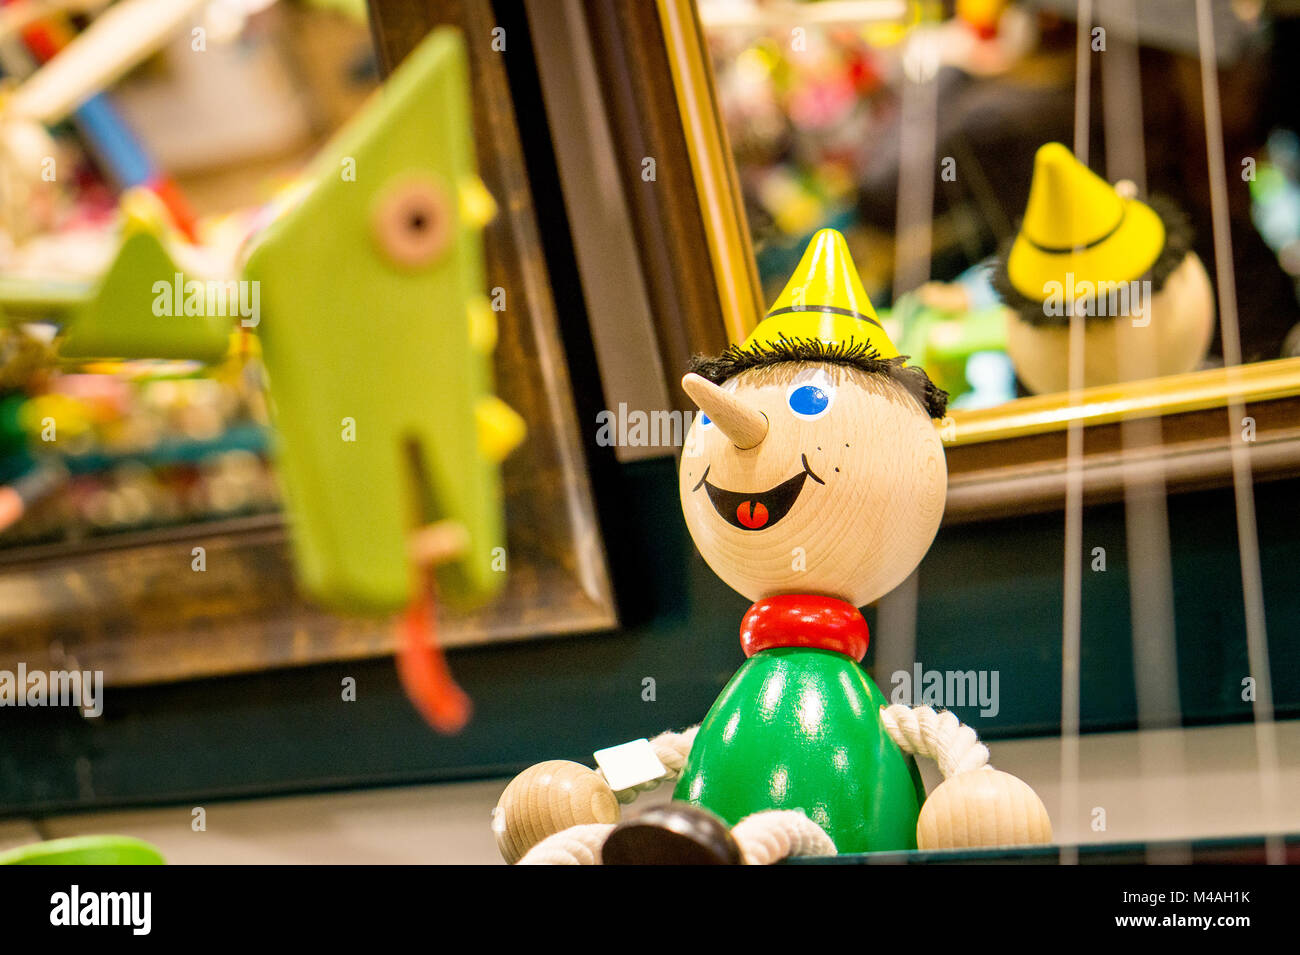 Eine hölzerne junge Abbildung auf einem Toy Store Shelf. Stockfoto